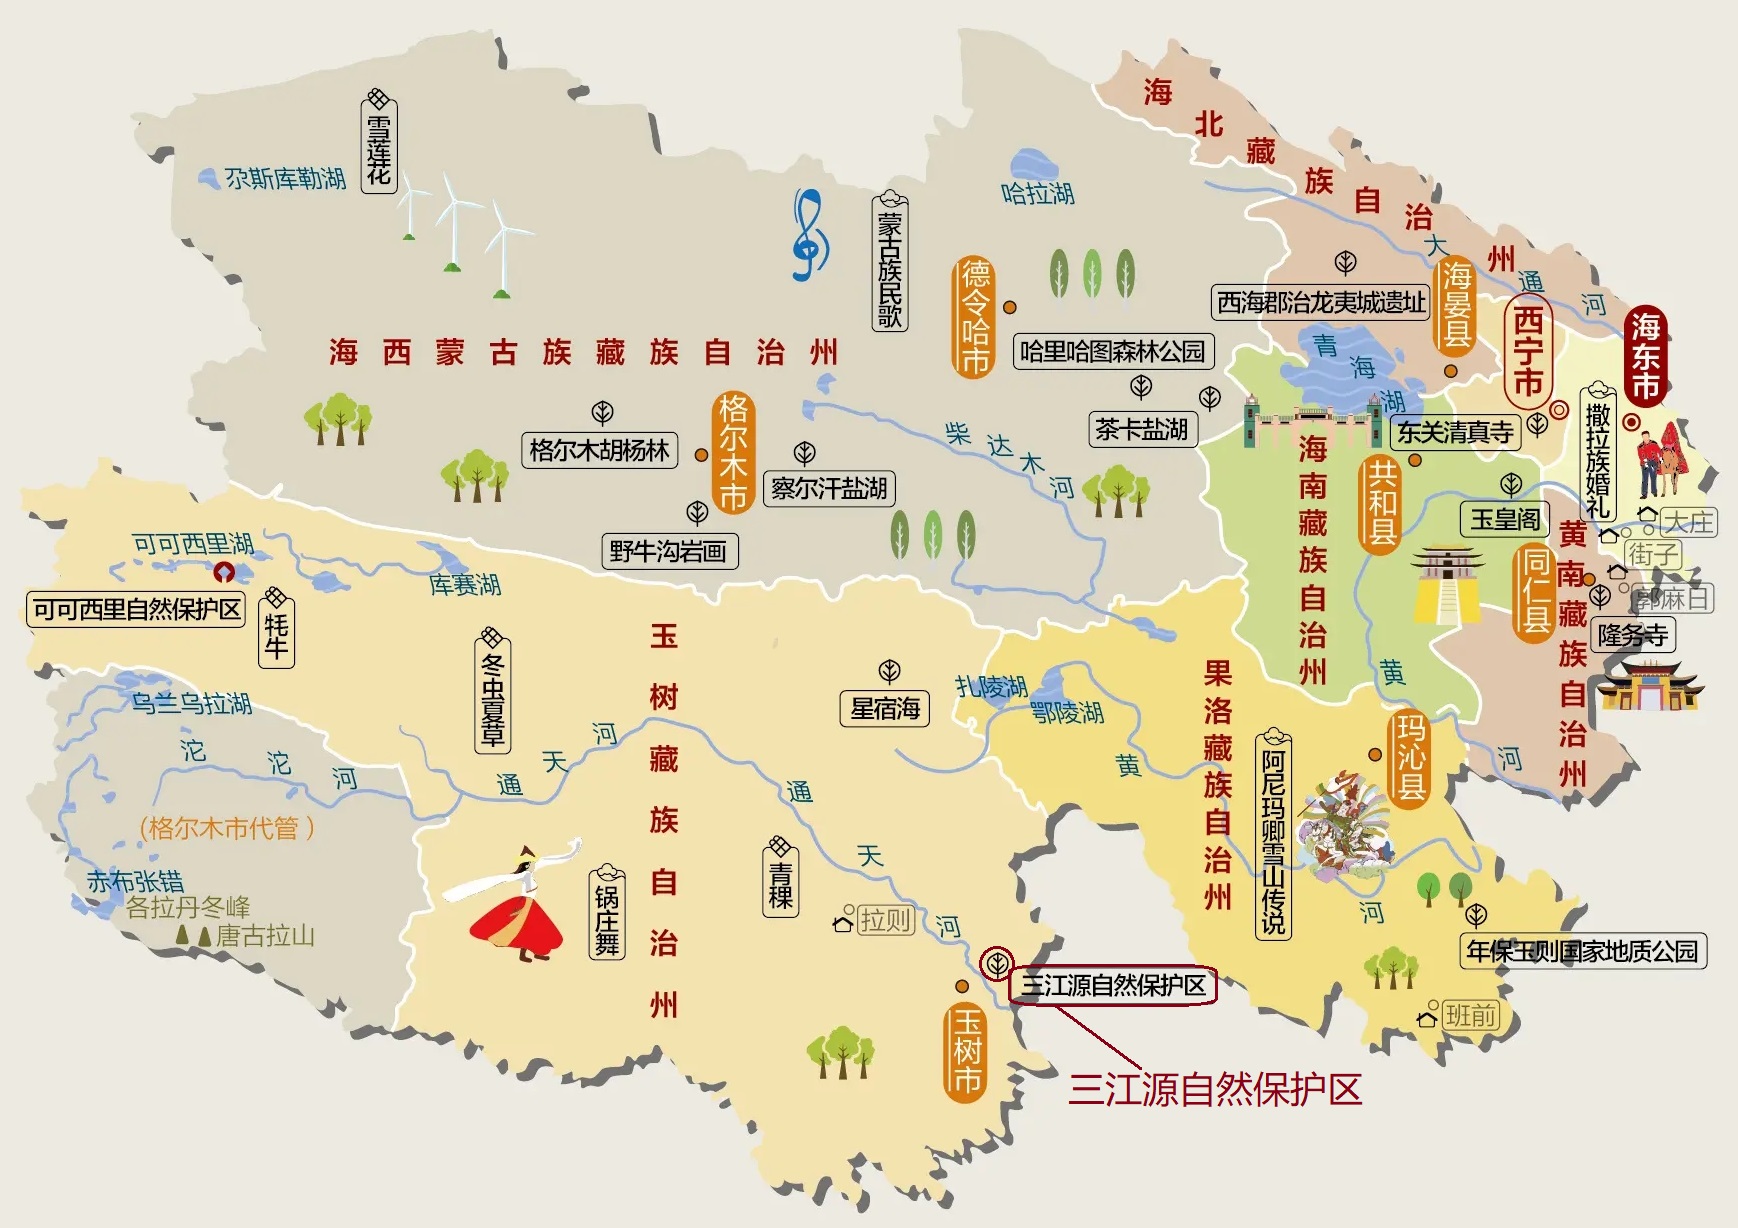 你知道我国的三江源地区和三江并流地区,分别在哪里吗?